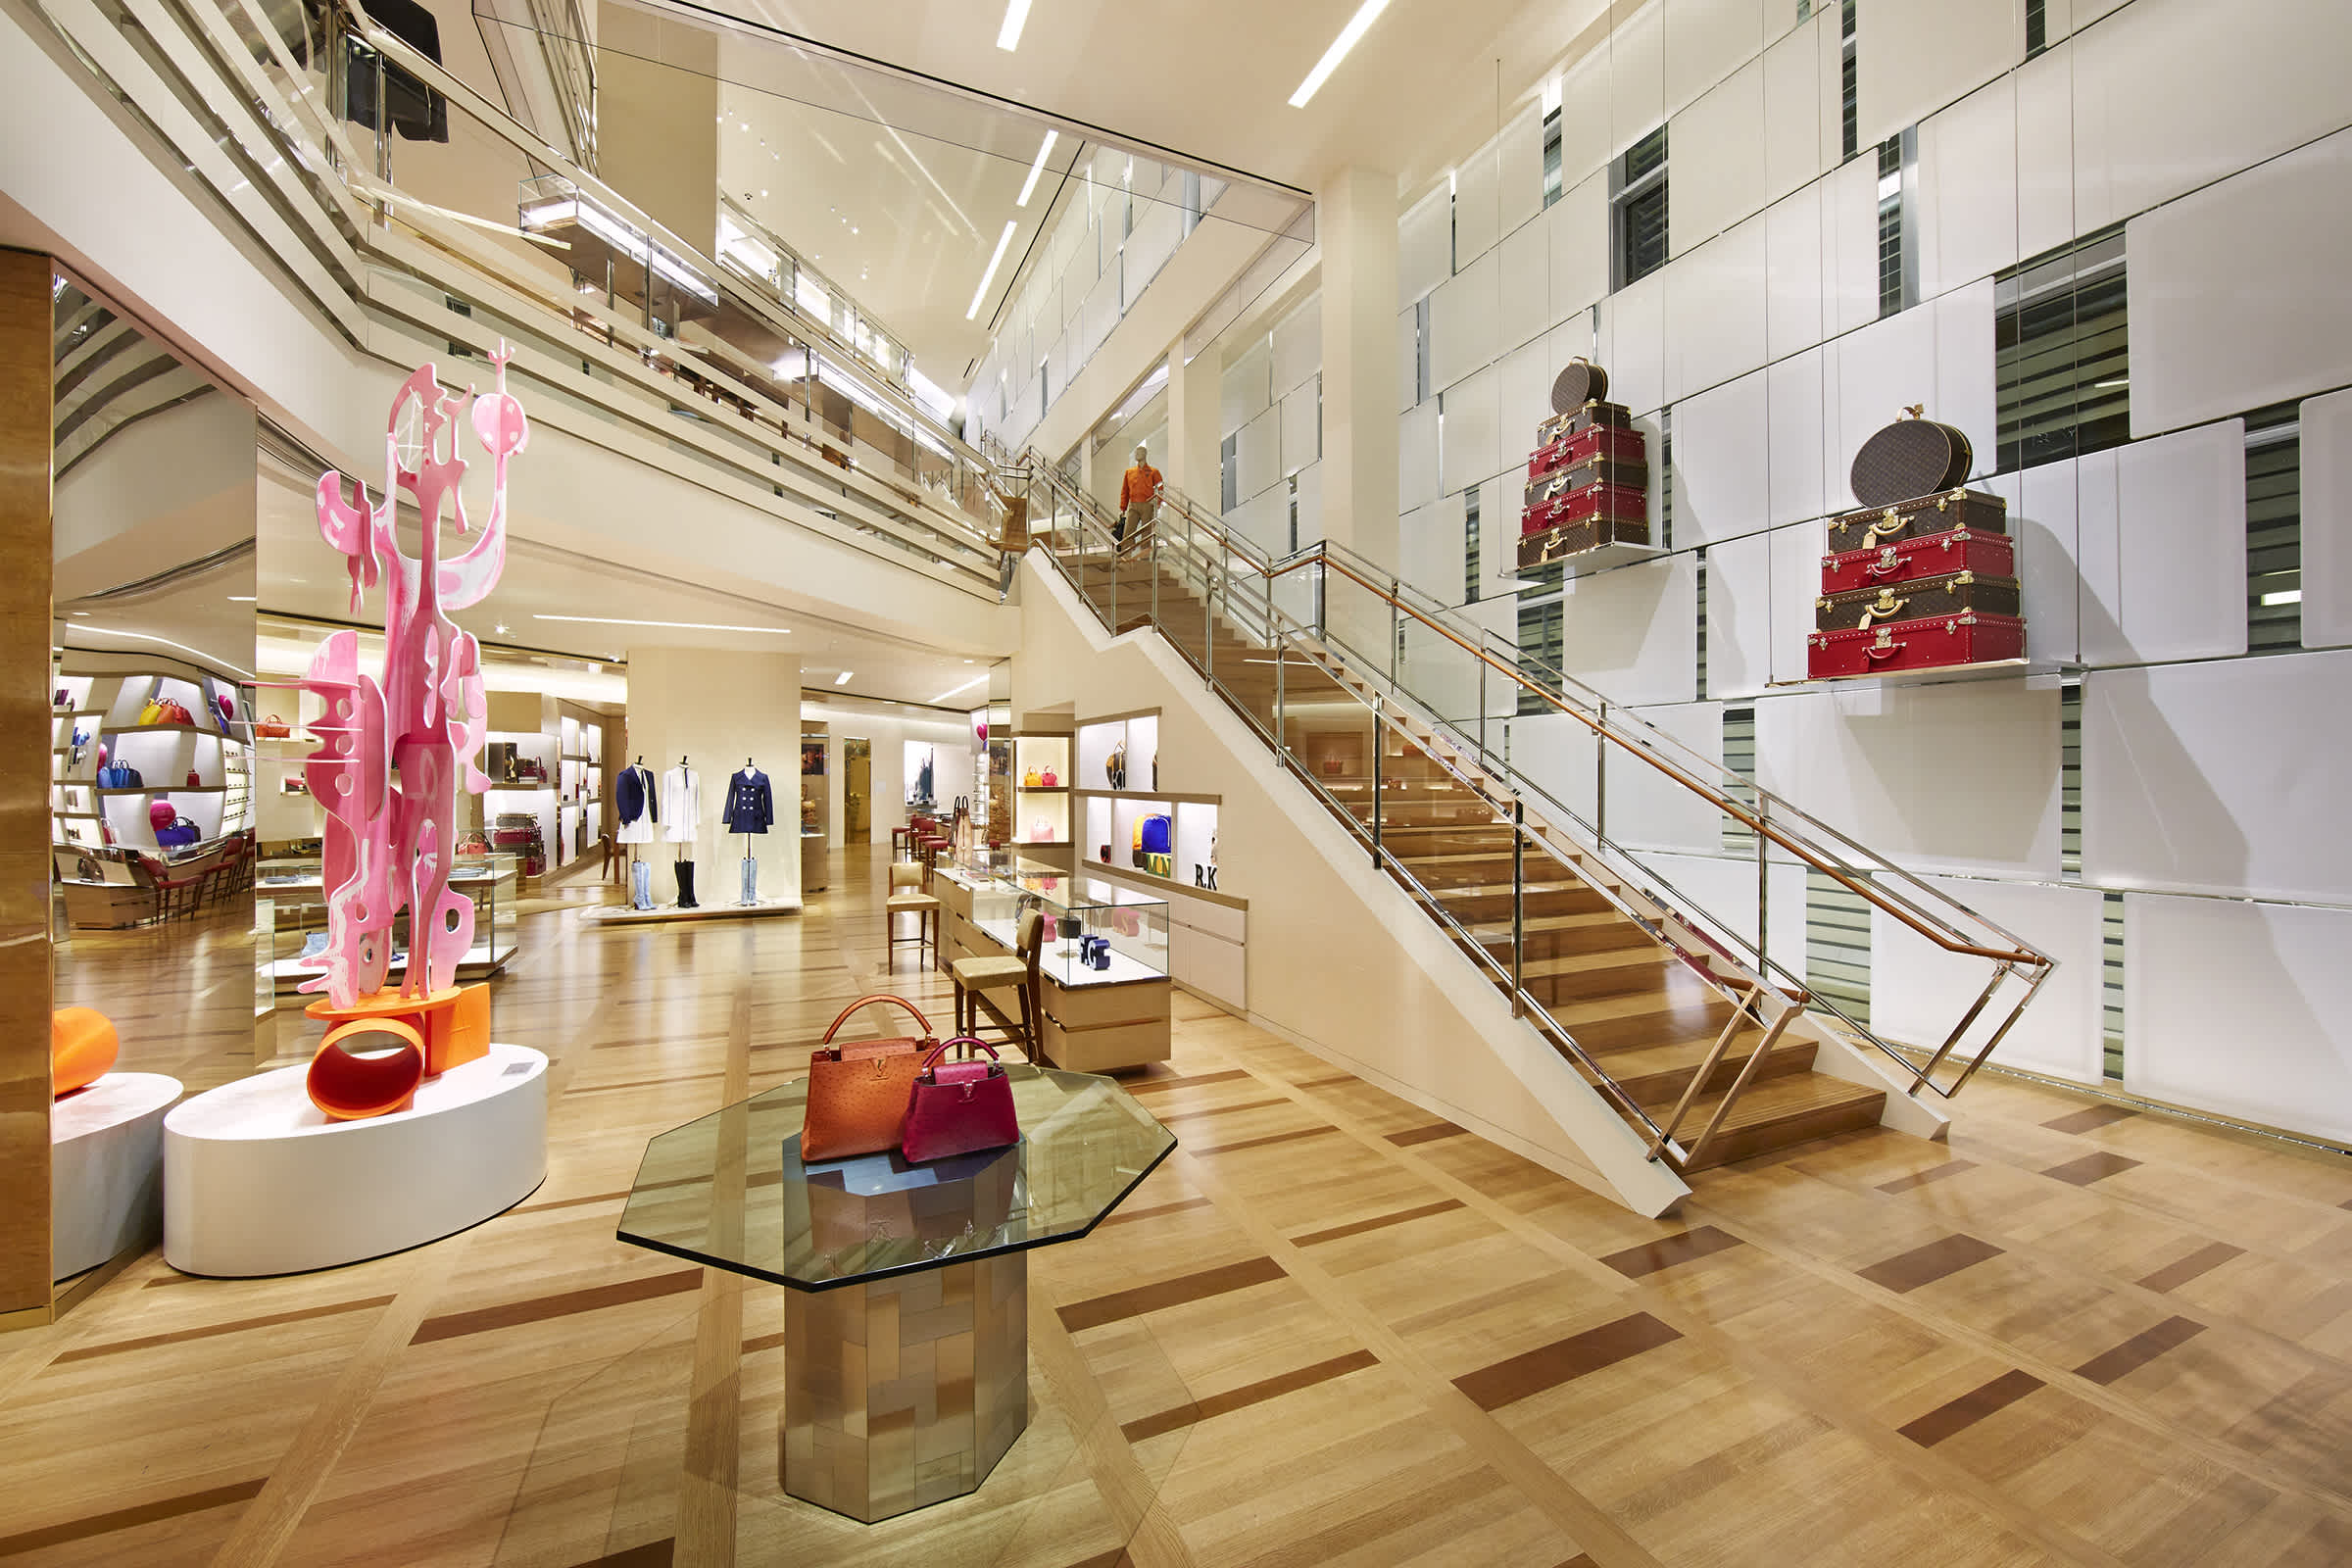 Tienda Louis Vuitton Beverly Center - Estados Unidos